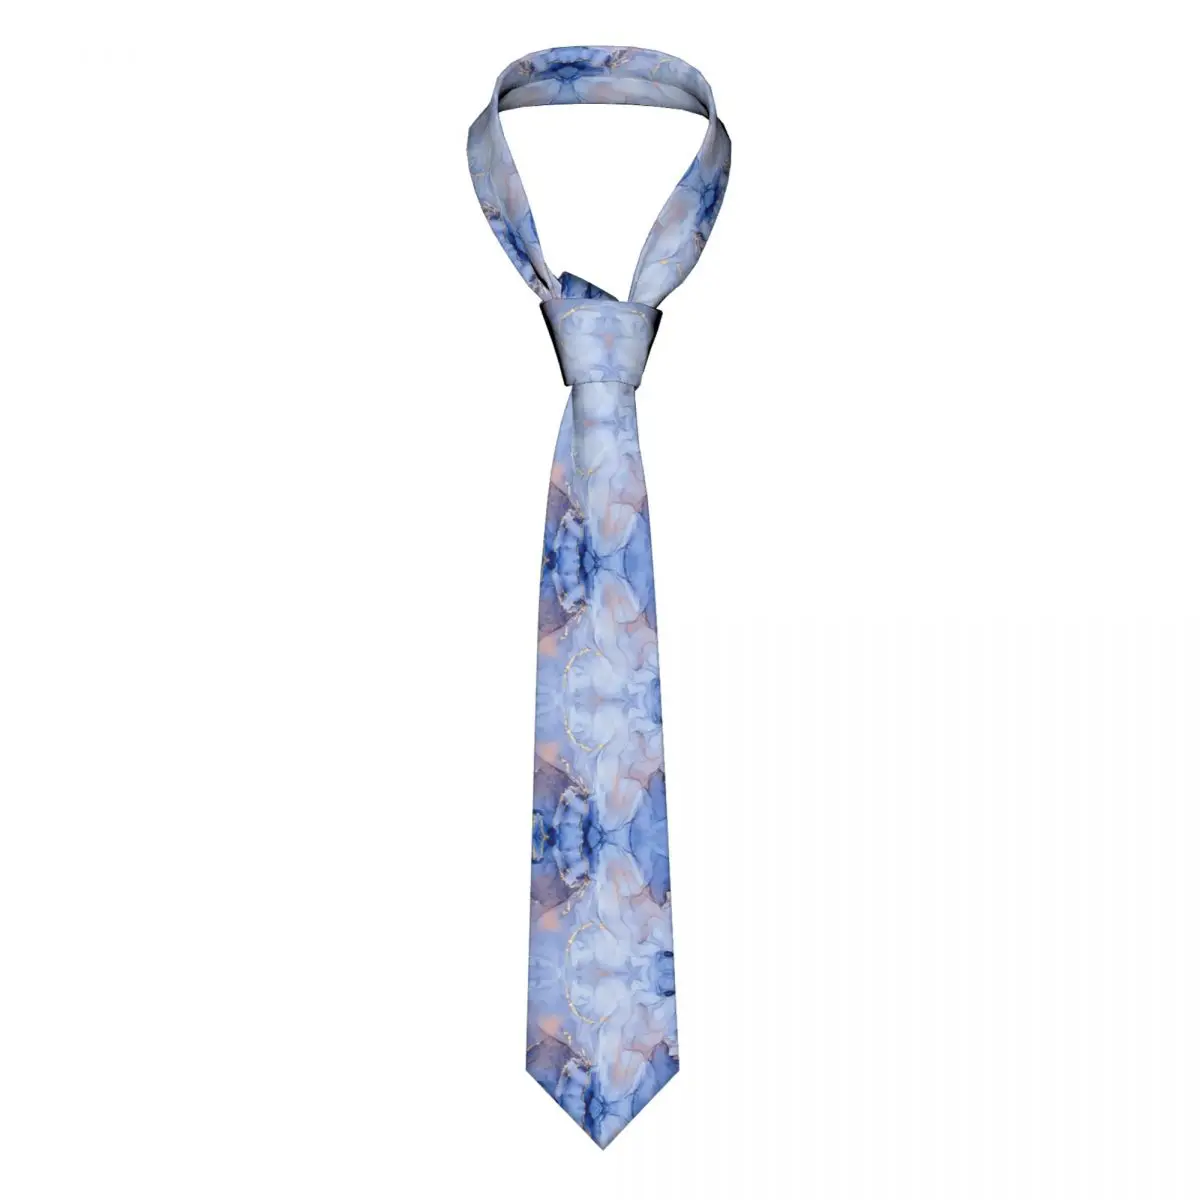 

Мужской узкий галстук 8 см из полиэстера, с мраморным узором